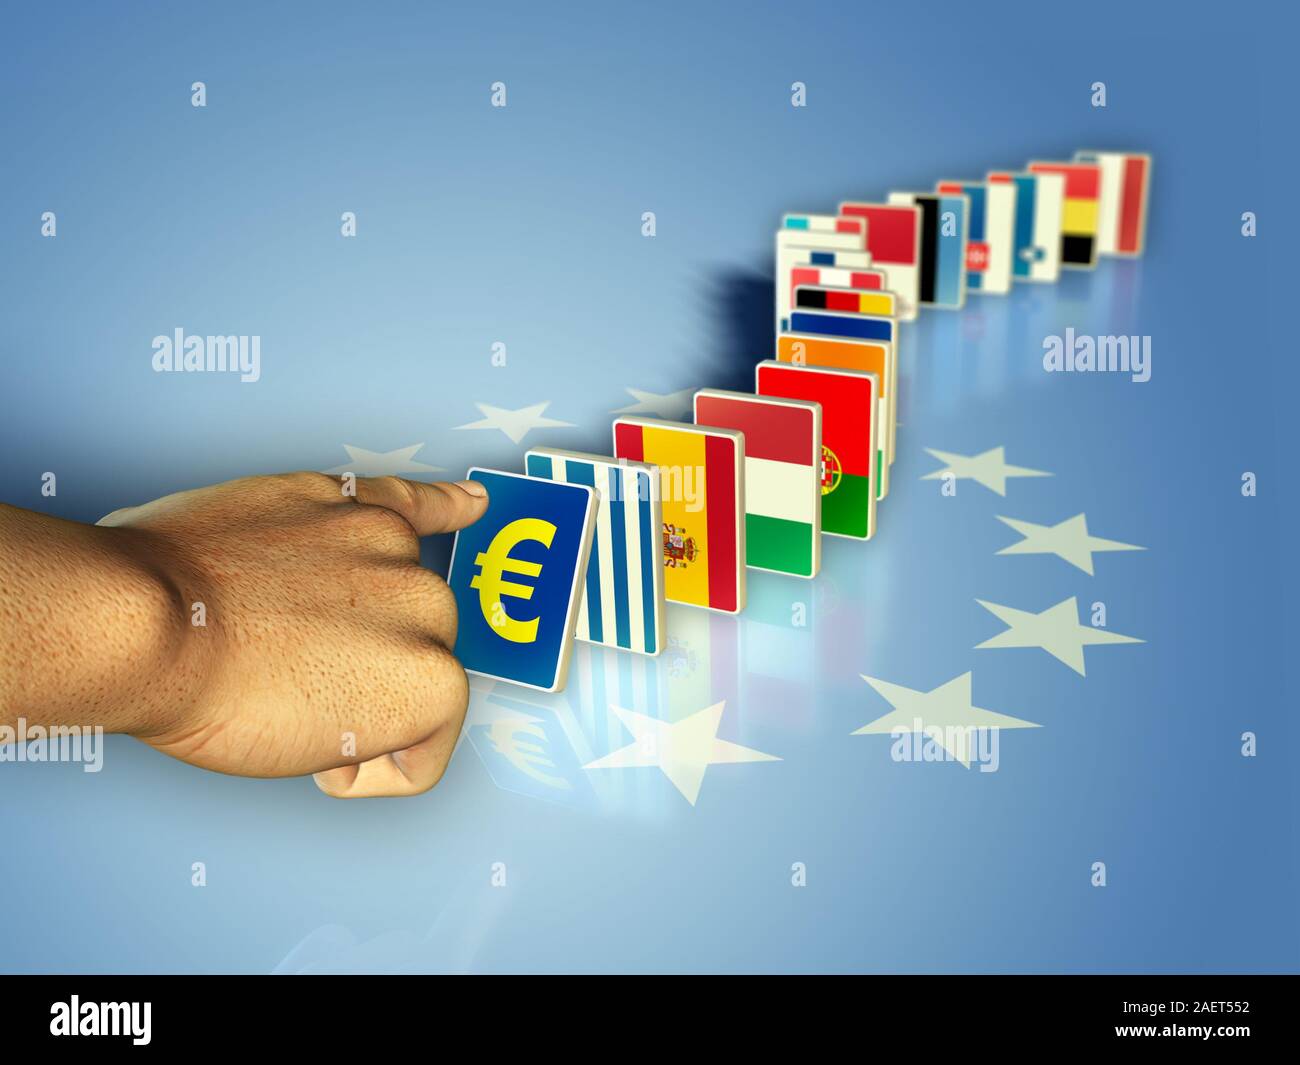 Les drapeaux des pays de la Communauté européenne est devenue pièces domino, prêt à tomber avec leur monnaie. Illustration numérique. Banque D'Images